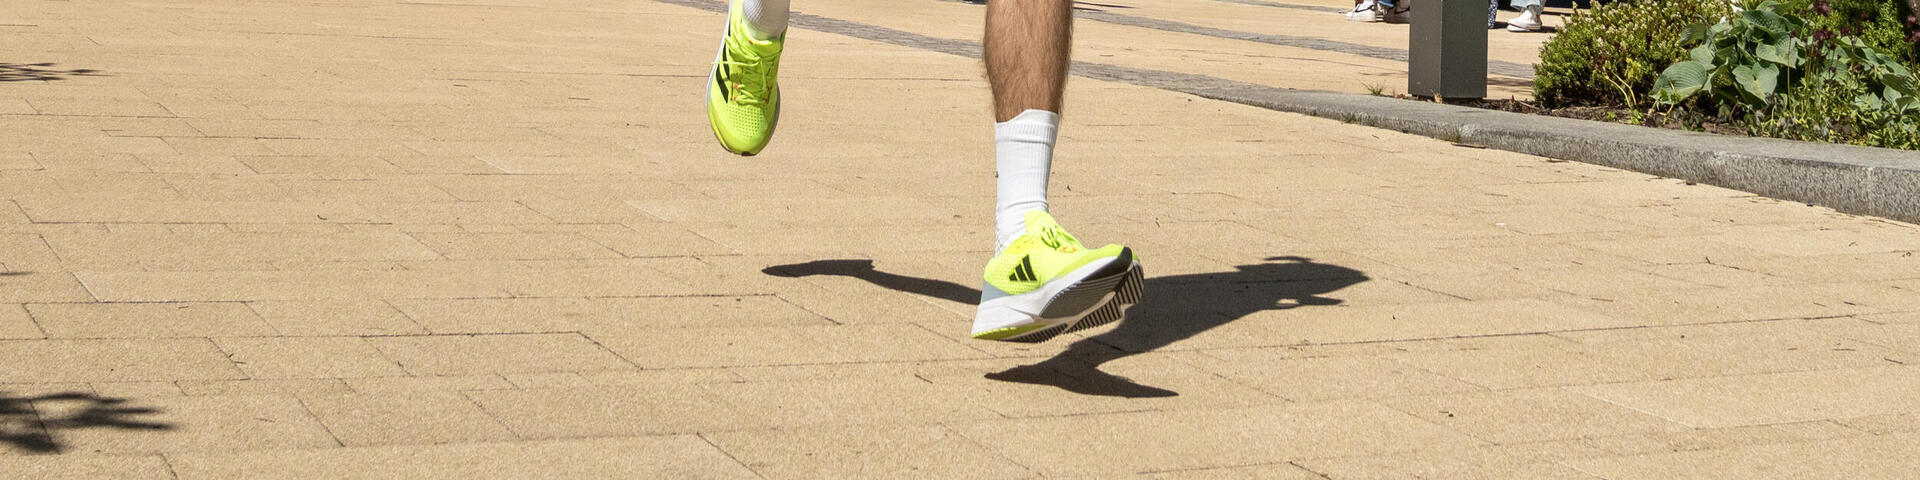 Quelle marque pour des chaussures de running ?